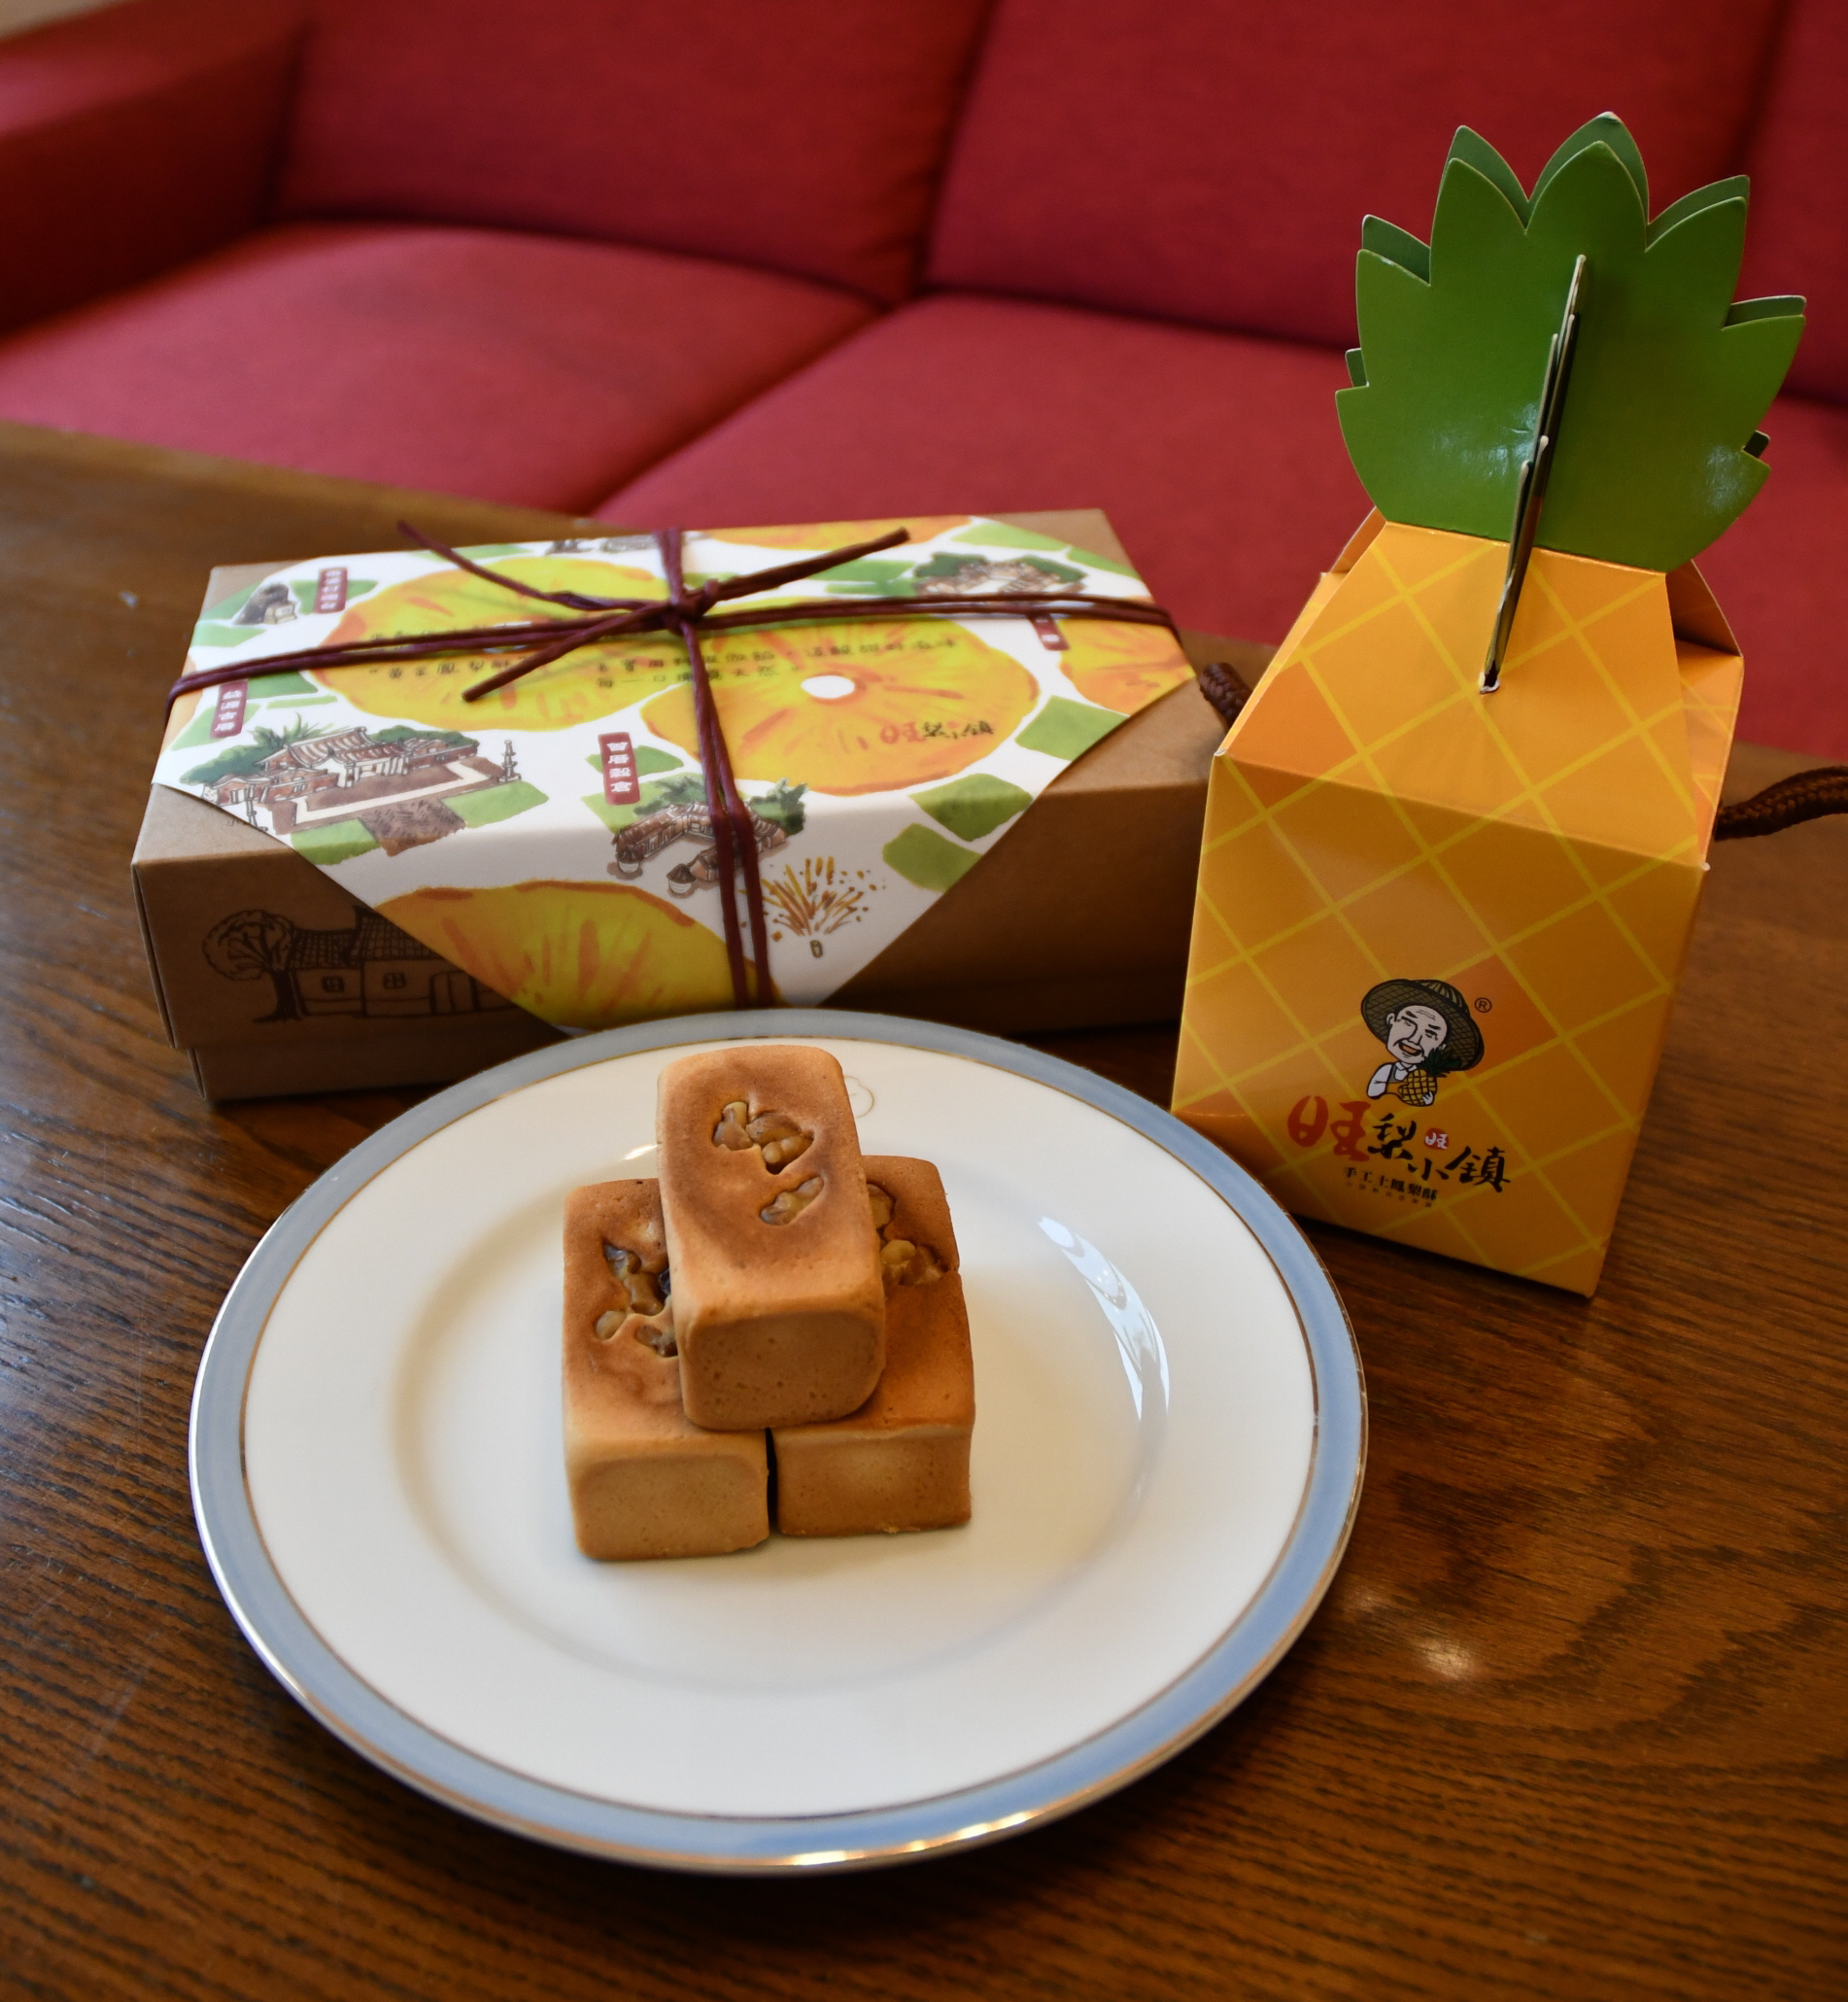 日本人が基盤築いた台湾パイナップル ケーキ輸入で支援を 産経ニュース